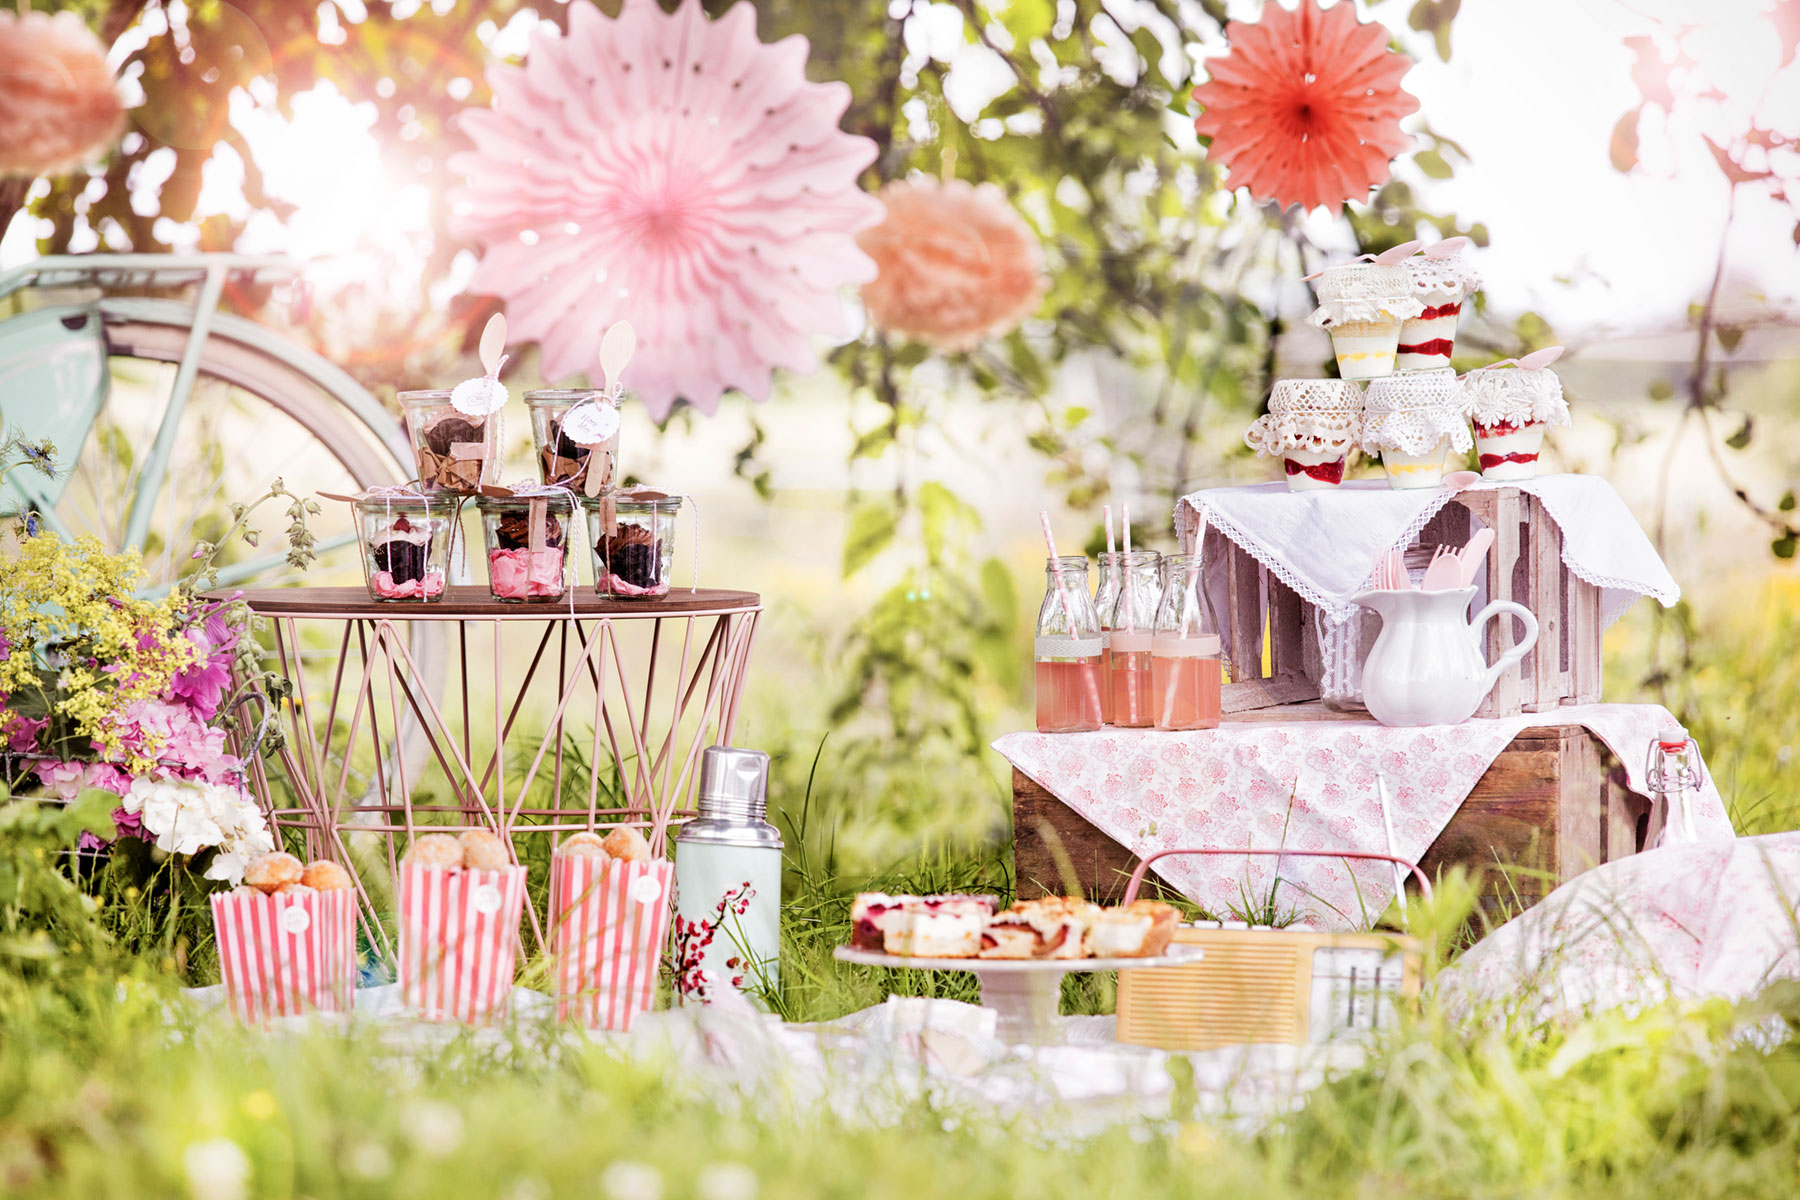 Rezept und Ideen für Picknick mit Kuchen und Torte